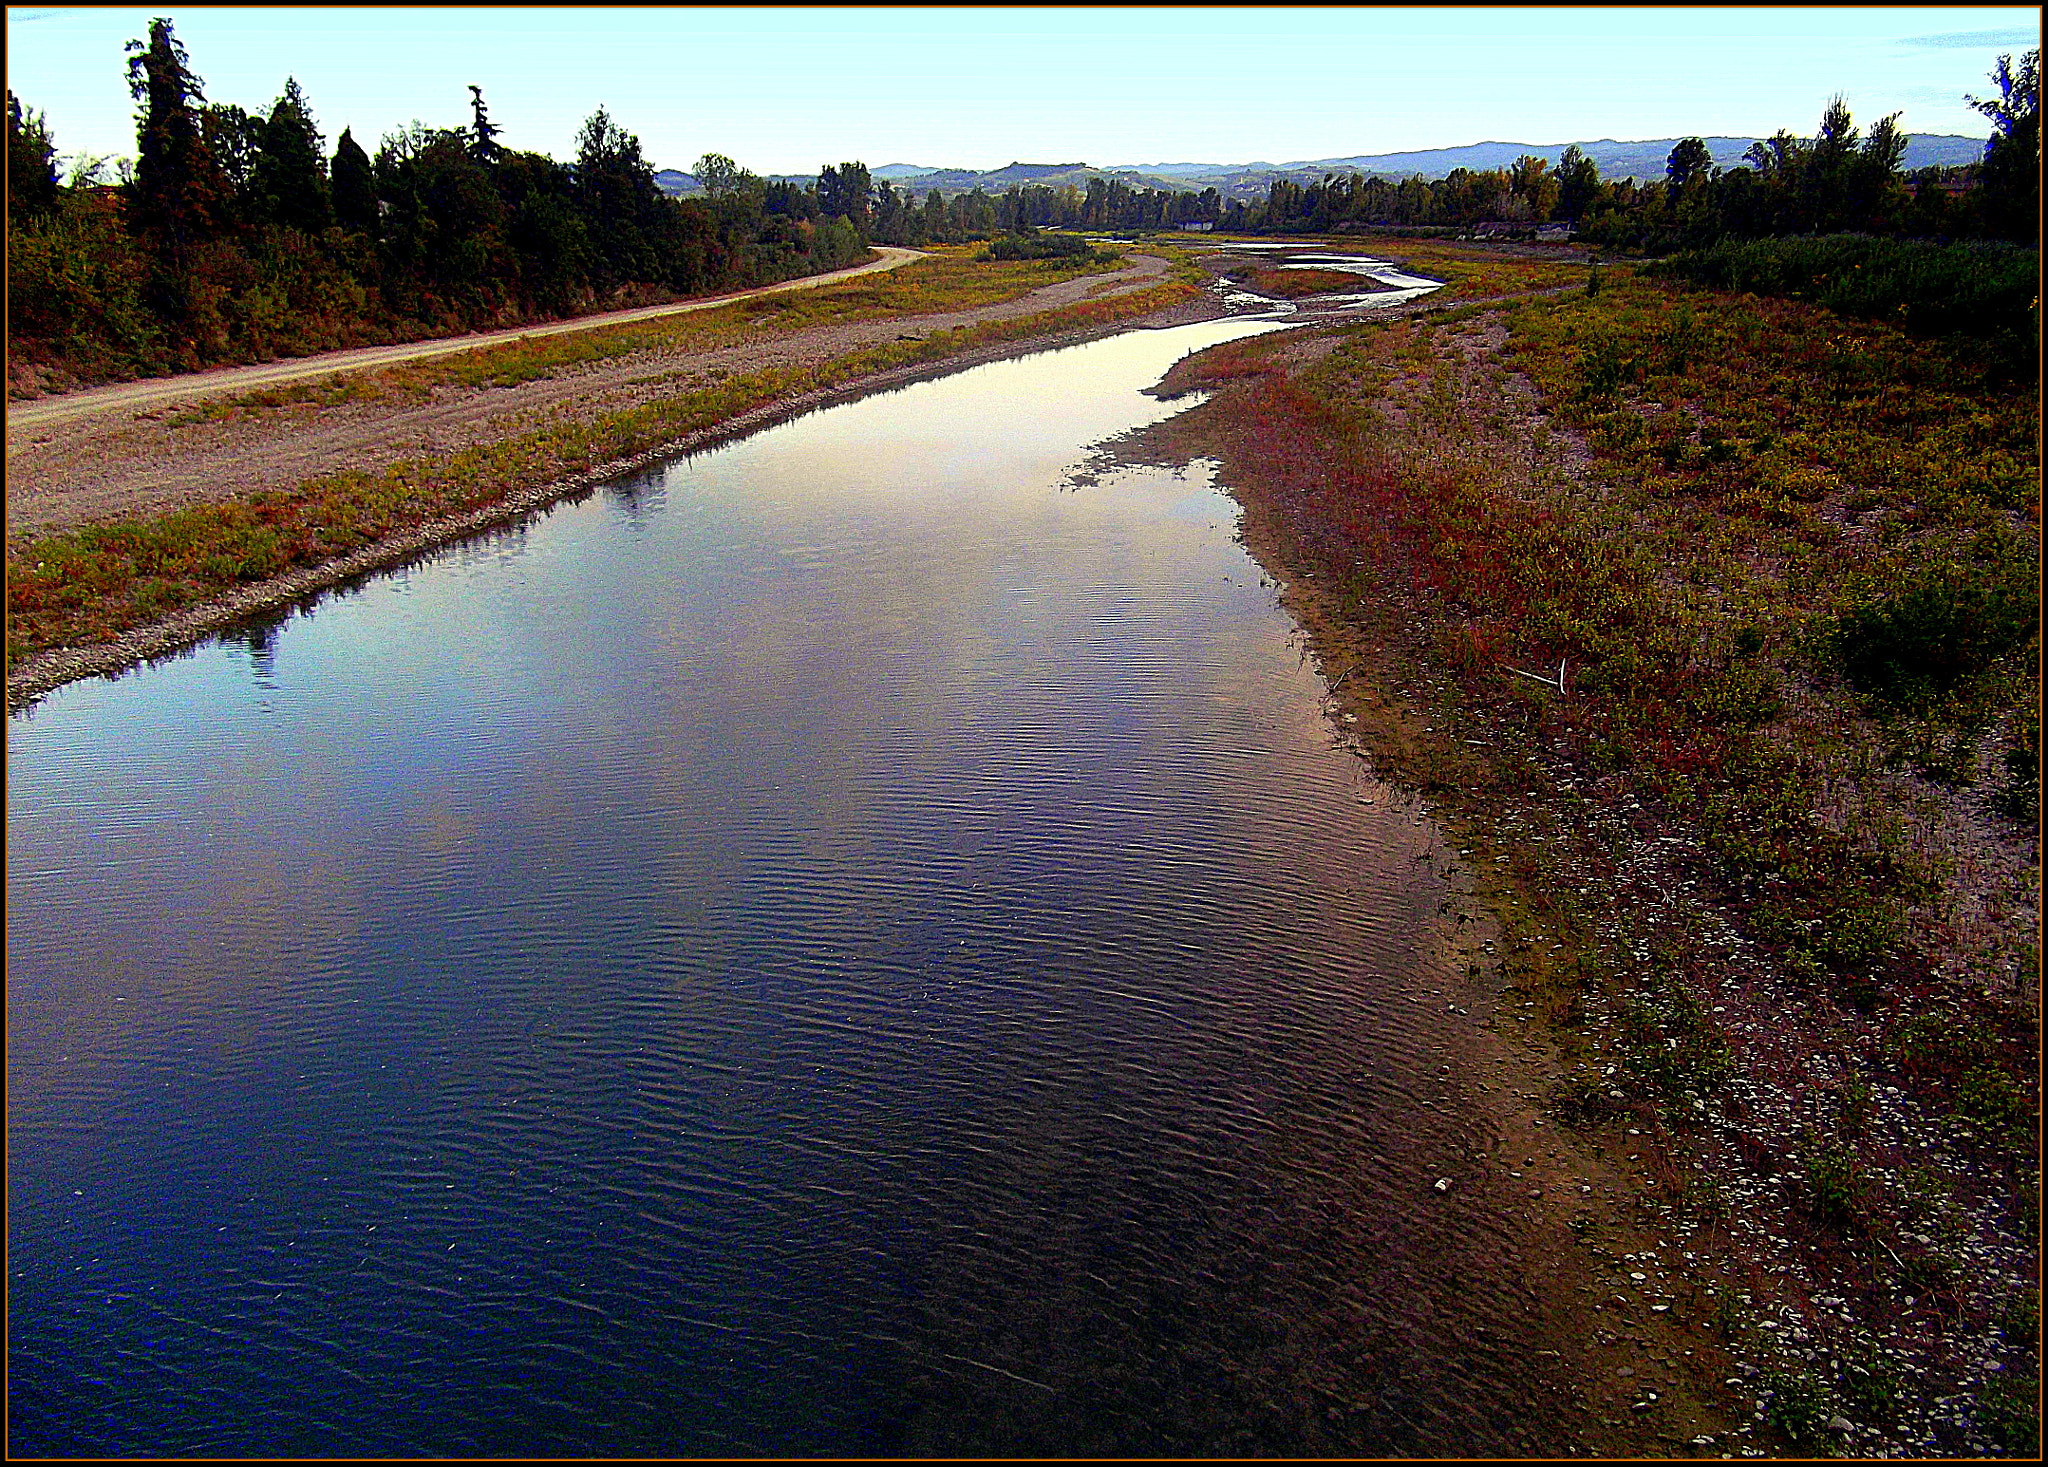 Fujifilm FinePix JX250 sample photo. Paesaggio autunnale sul fiume panaro. photography